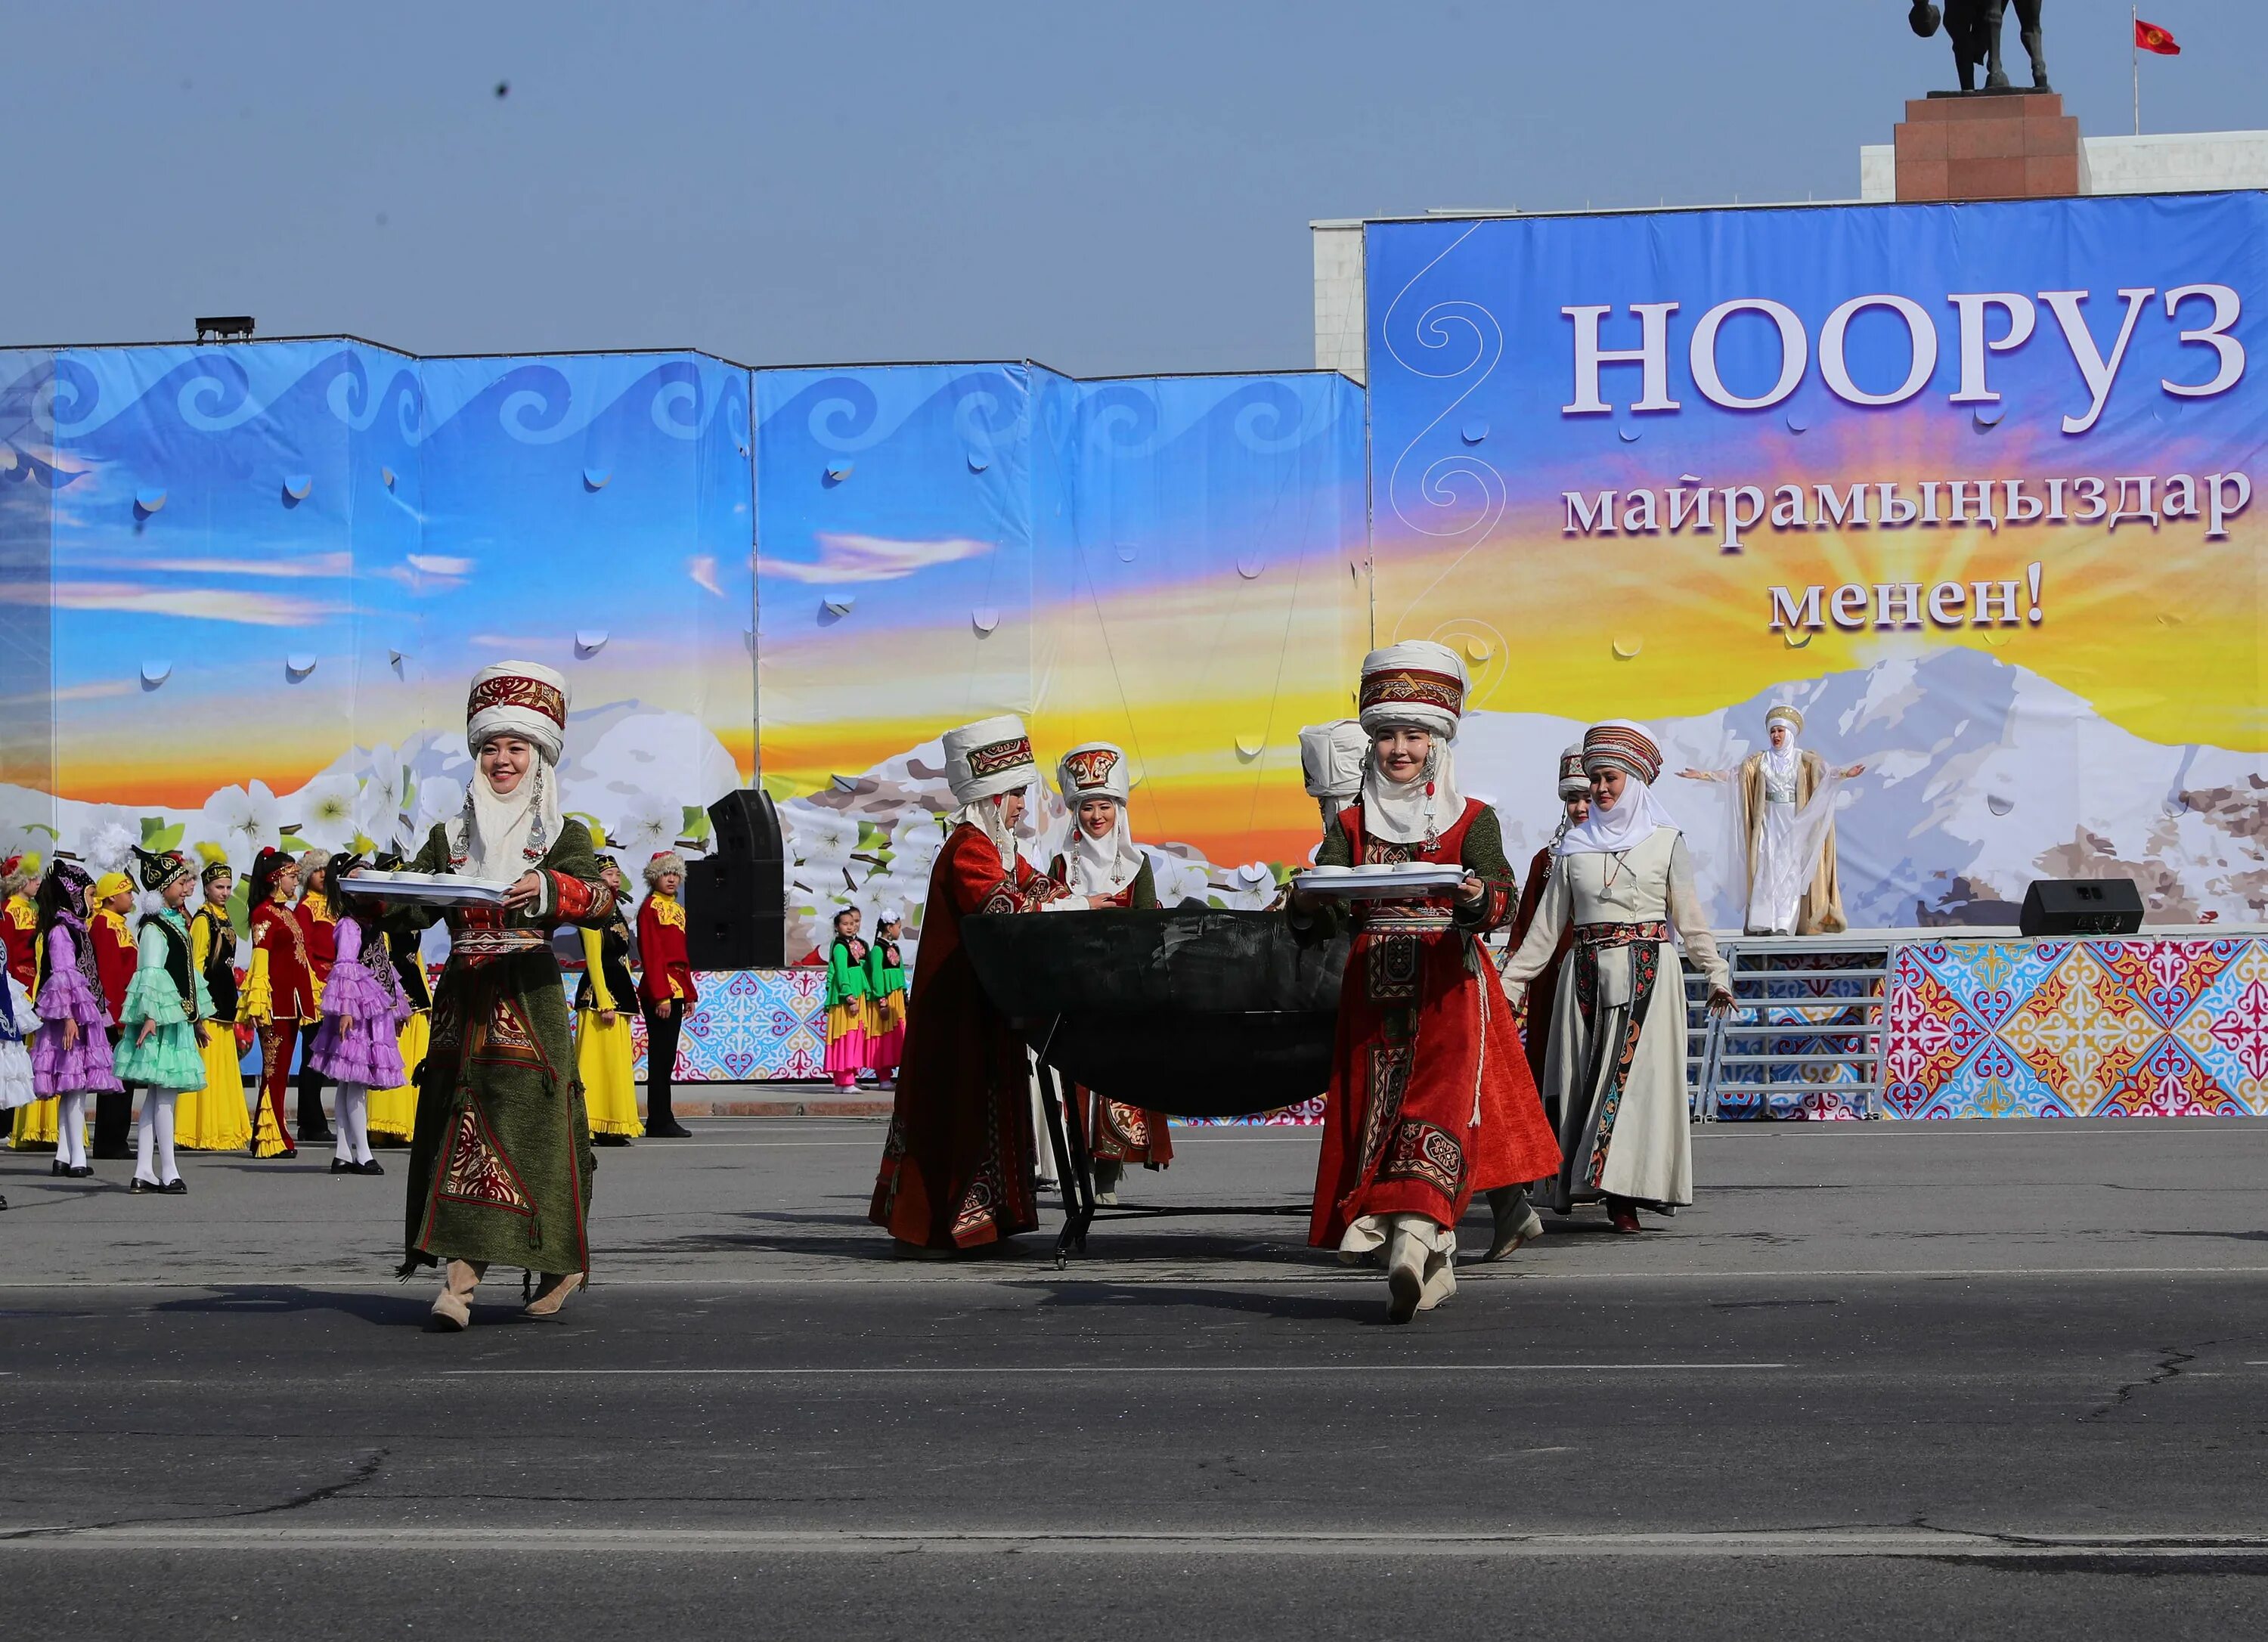 Нооруз в кыргызстане. Традиции Кыргызстана Нооруз. Праздник Нооруз Бишкек. Нооруз майрам Киргизия юрта. Нооруз в Кыргызстане сумолок.